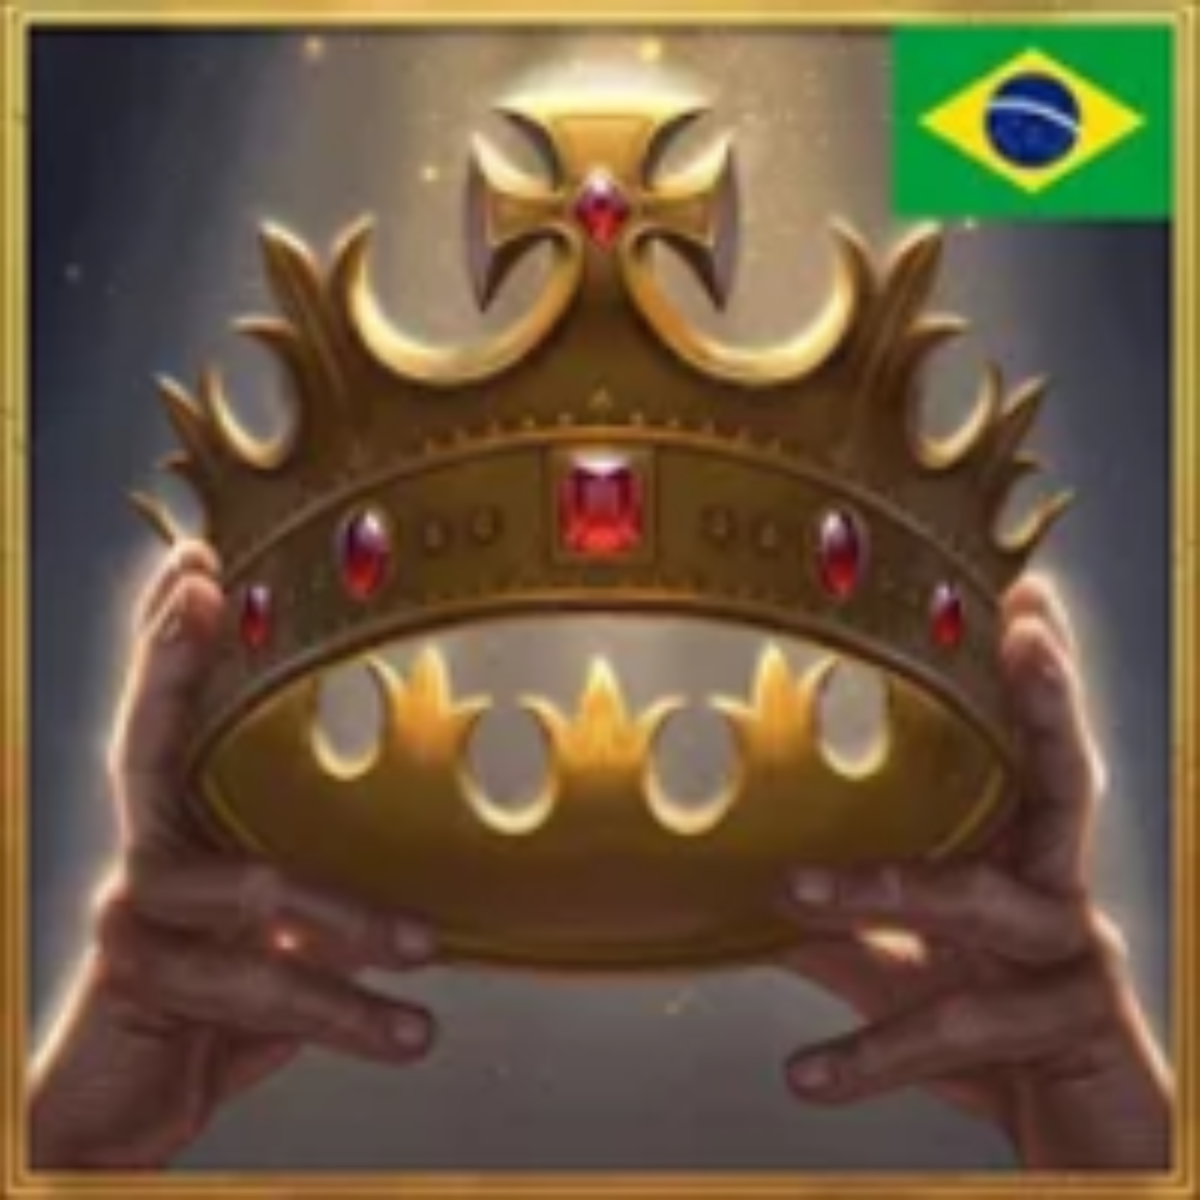 Baixe o Jogo de Damas Brasileiro MOD APK v11.12.1 para Android